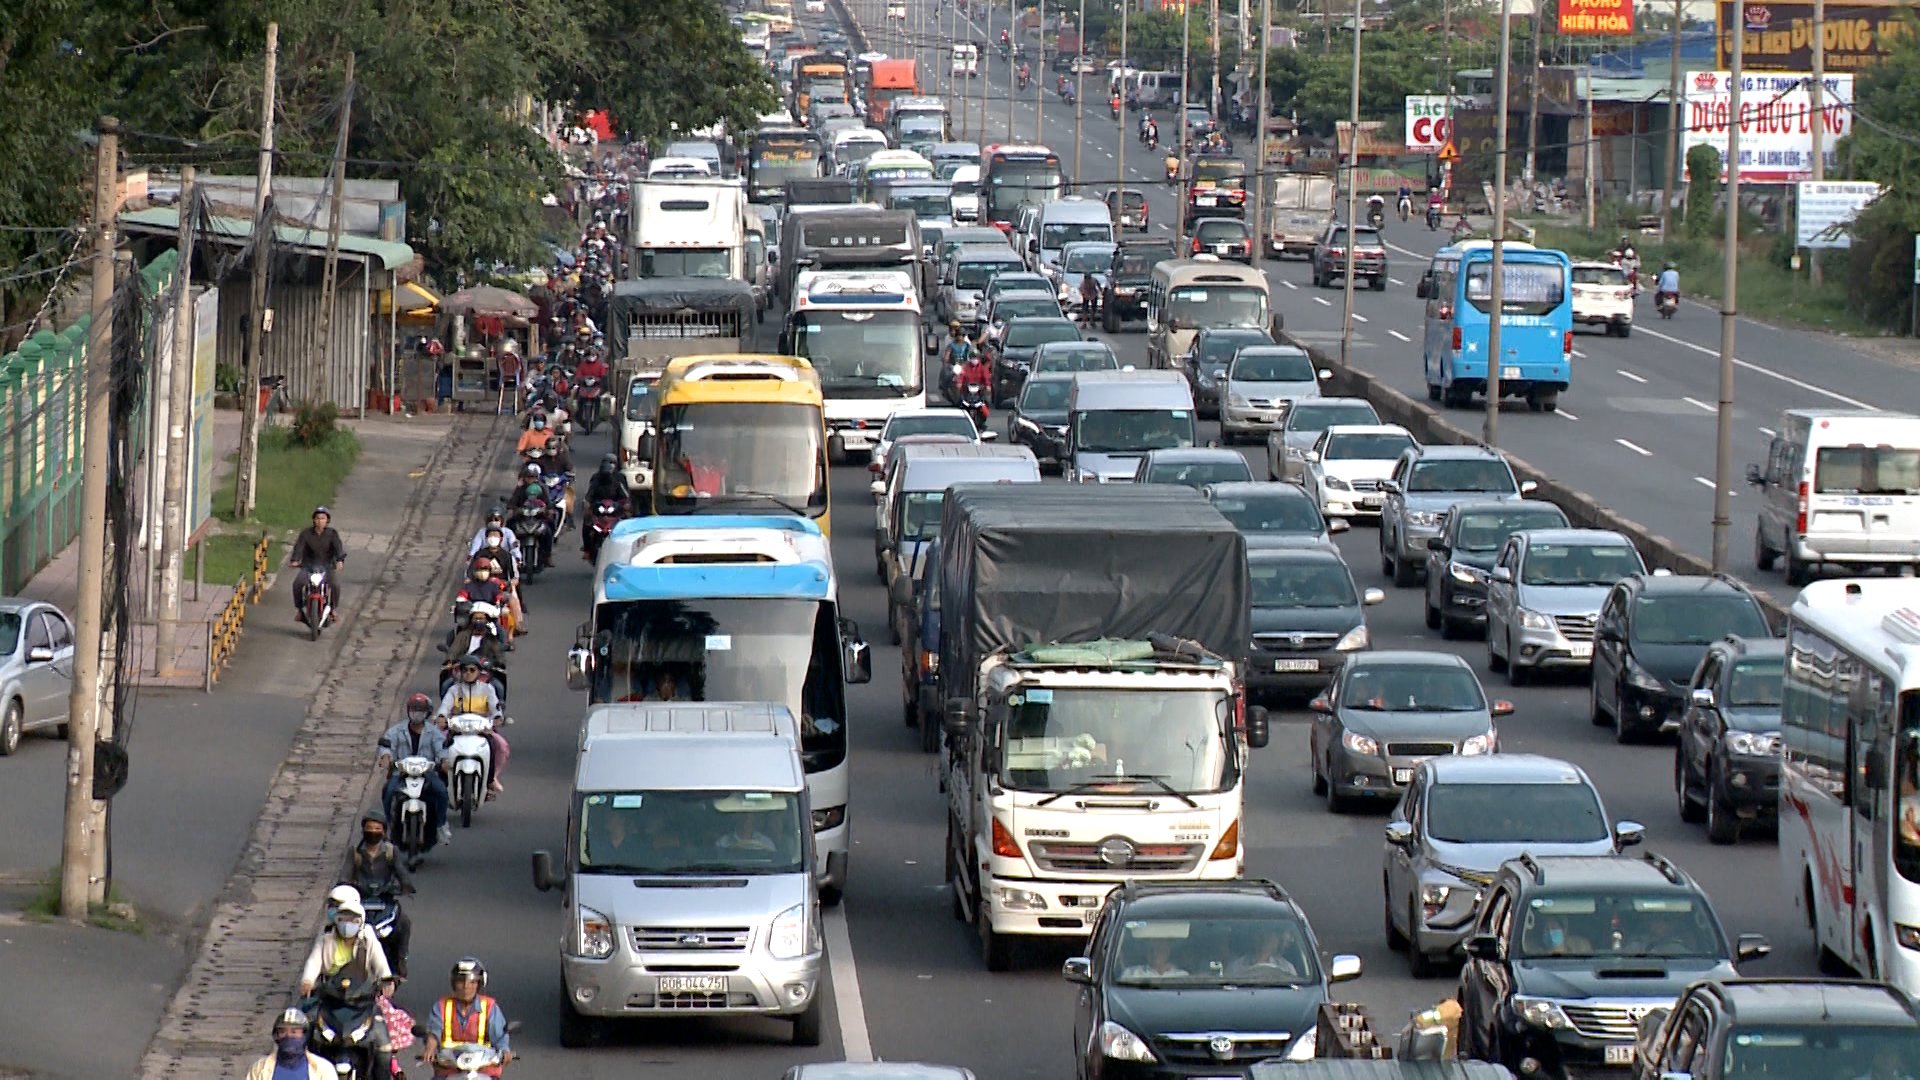 Cao tốc Biên Hòa - Vũng Táu hoàn thành và đưa vào sử dụng sẽ giảm tải cho Quốc lộ 51 hiện đang quá tải.